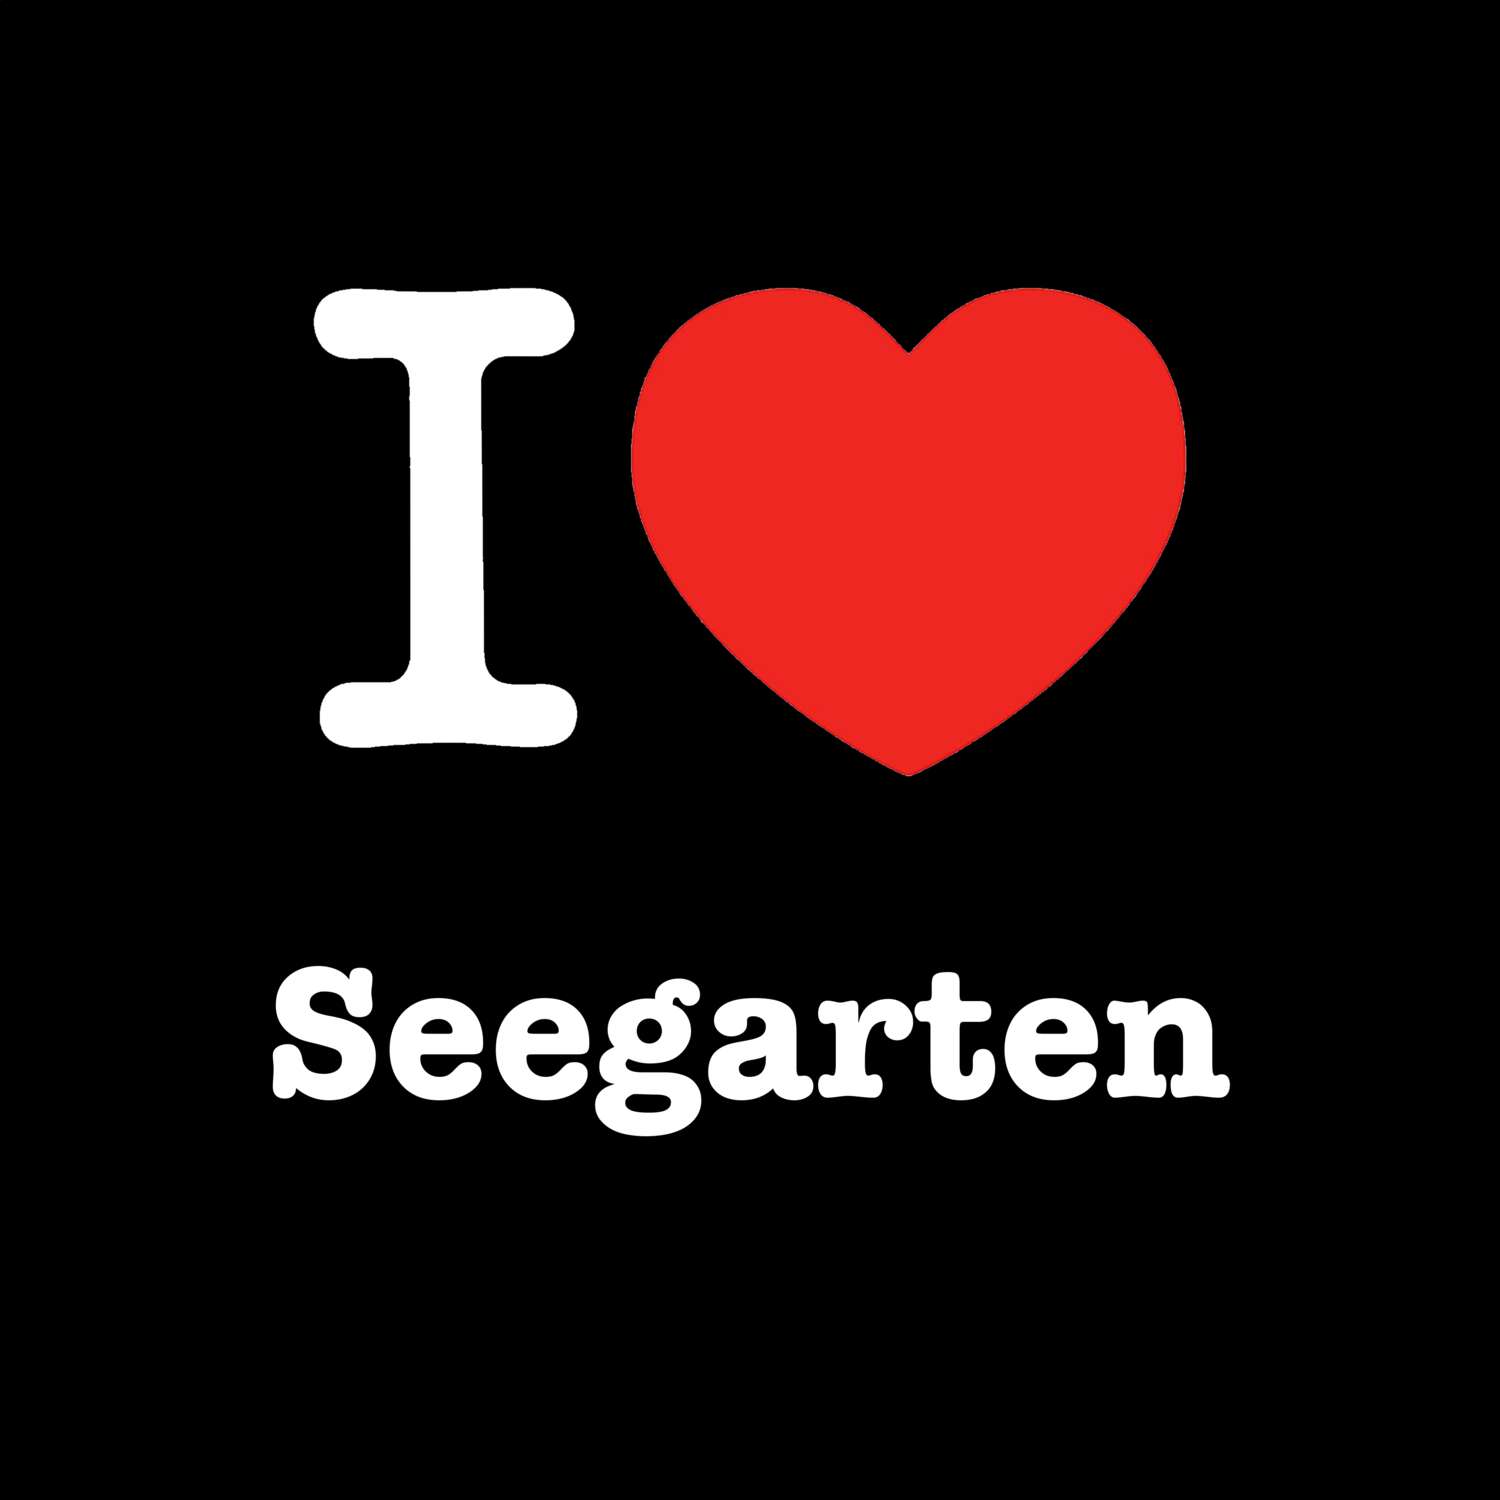 Seegarten T-Shirt »I love«